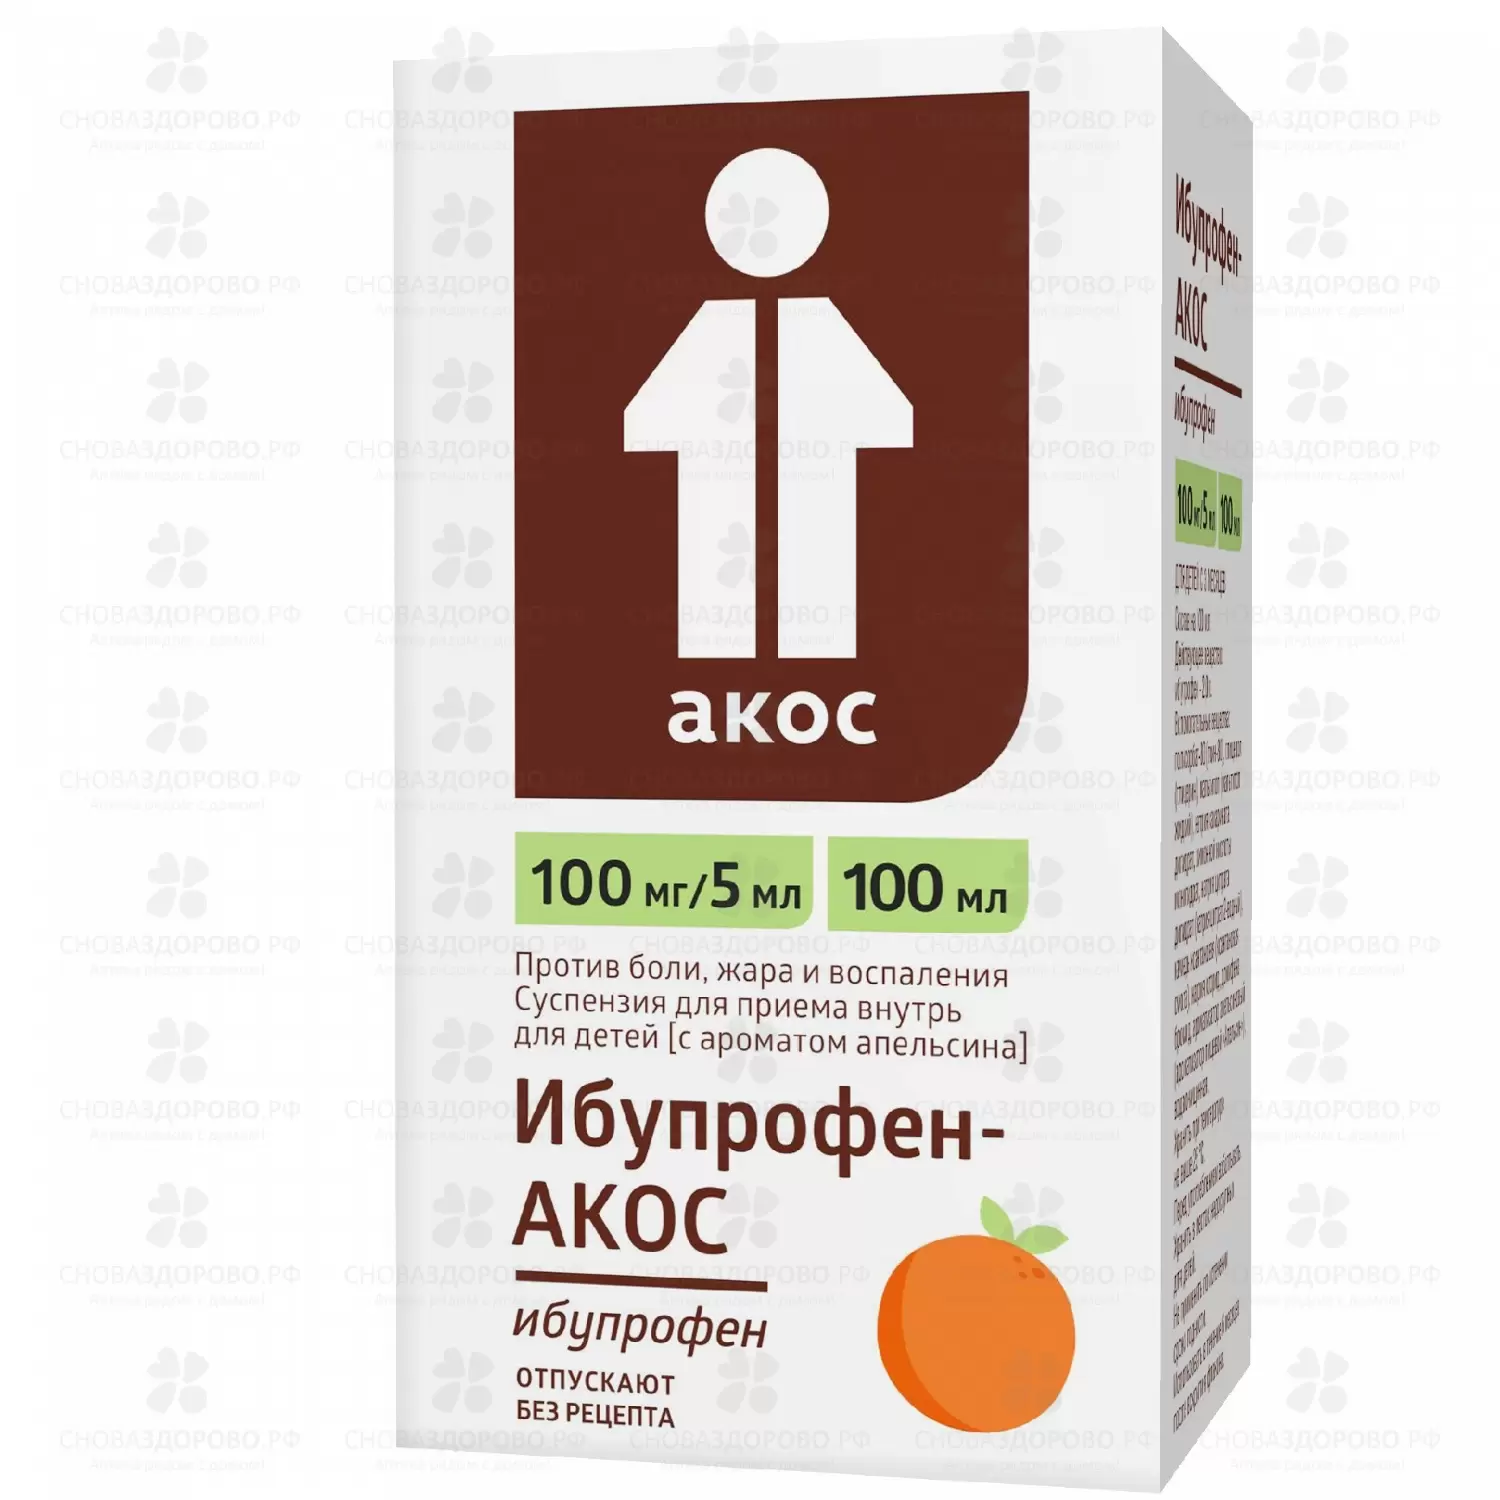 Ибупрофен-АКОС суспензия для приема внутрь для детей [апельсиновая] 100мг/5мг флакон 100мл (ложка дозировочная) ✅ 34558/06188 | Сноваздорово.рф